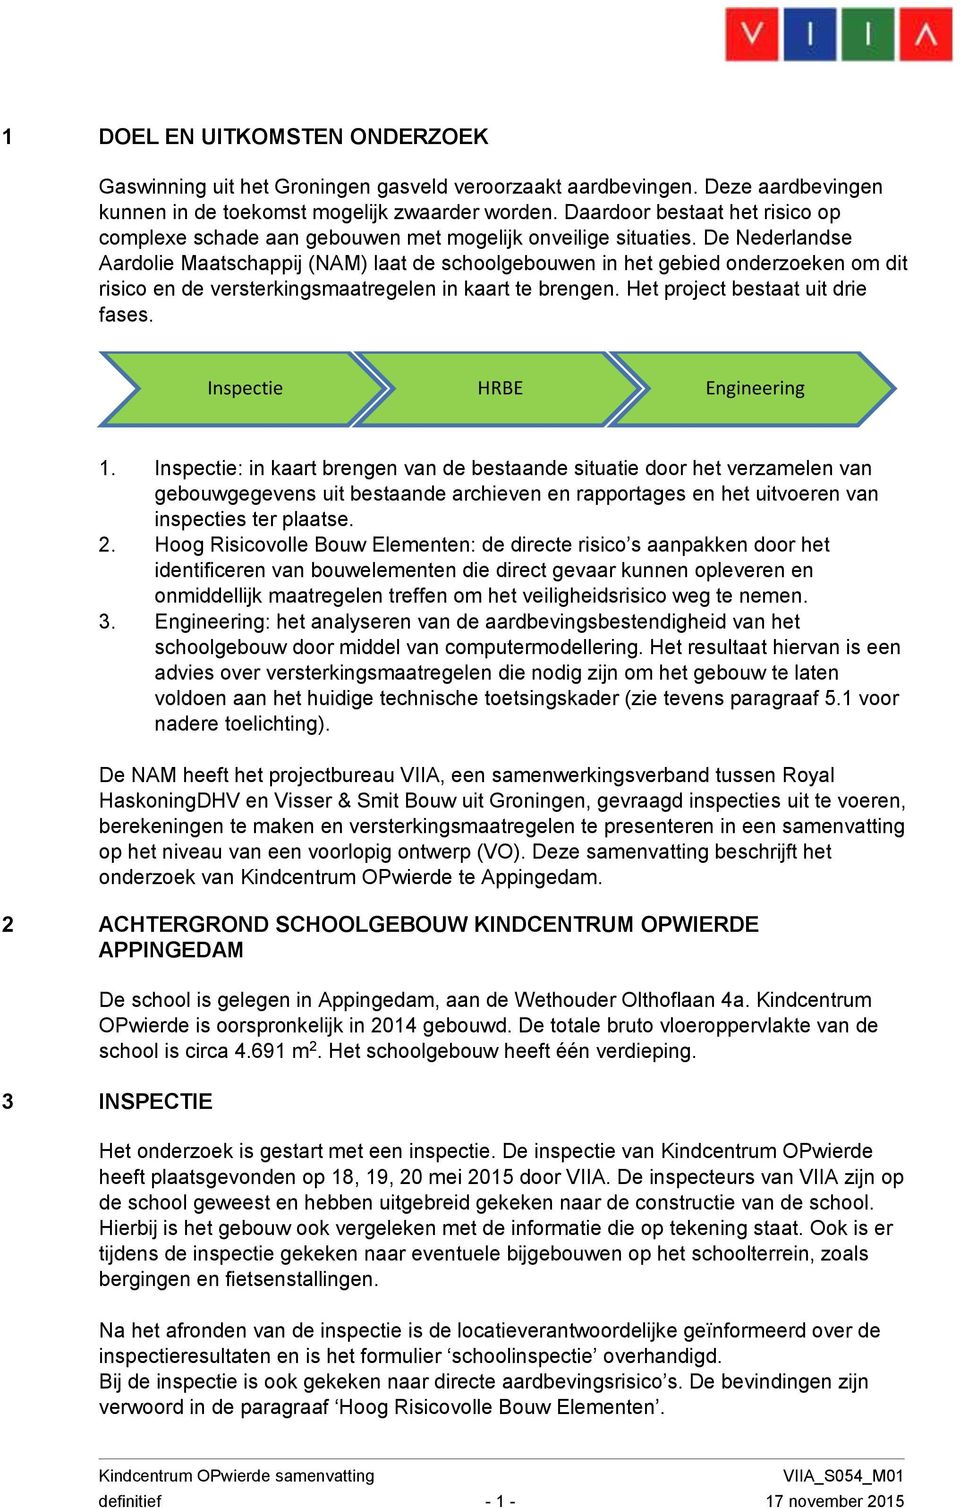 De Nederlandse Aardolie Maatschappij (NAM) laat de schoolgebouwen in het gebied onderzoeken om dit risico en de versterkingsmaatregelen in kaart te brengen. Het project bestaat uit drie fases.